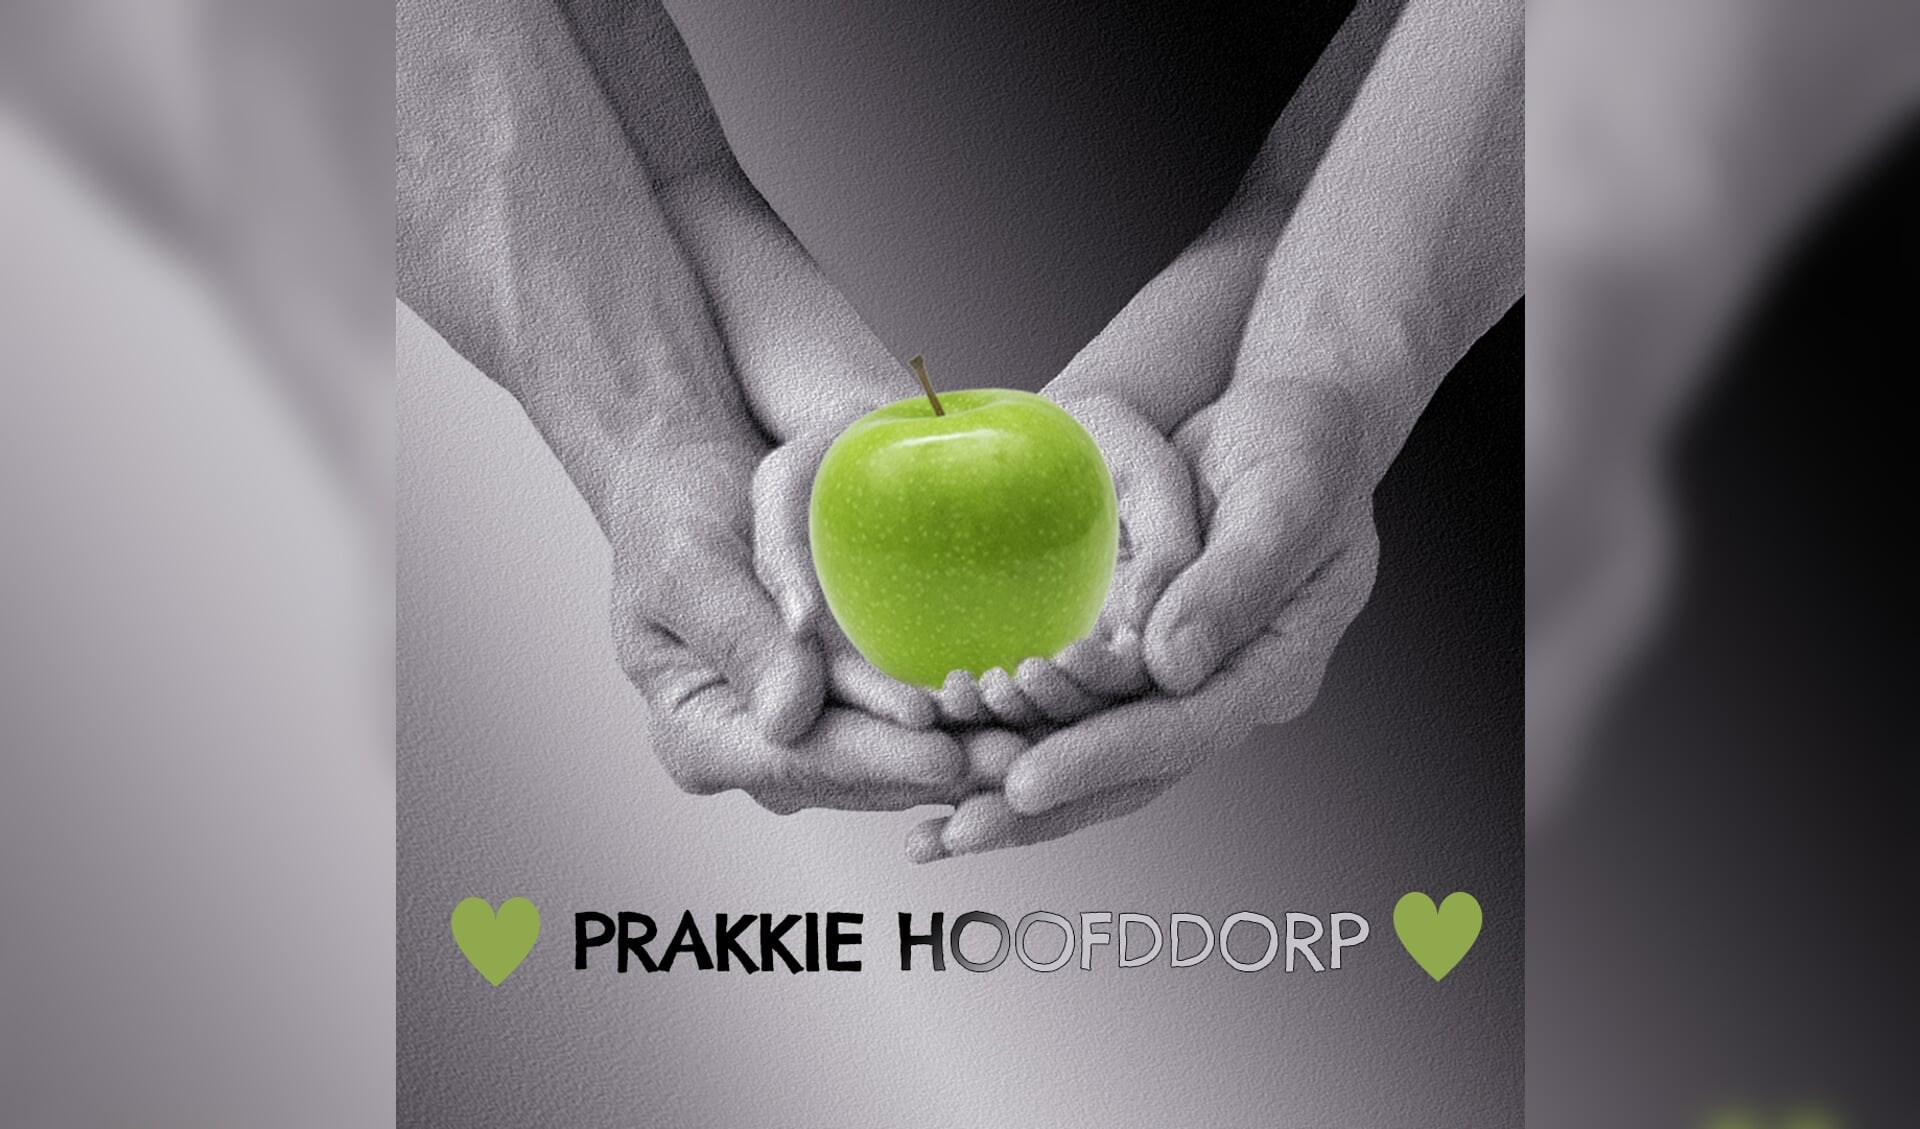 Prakkie Hoofddorp